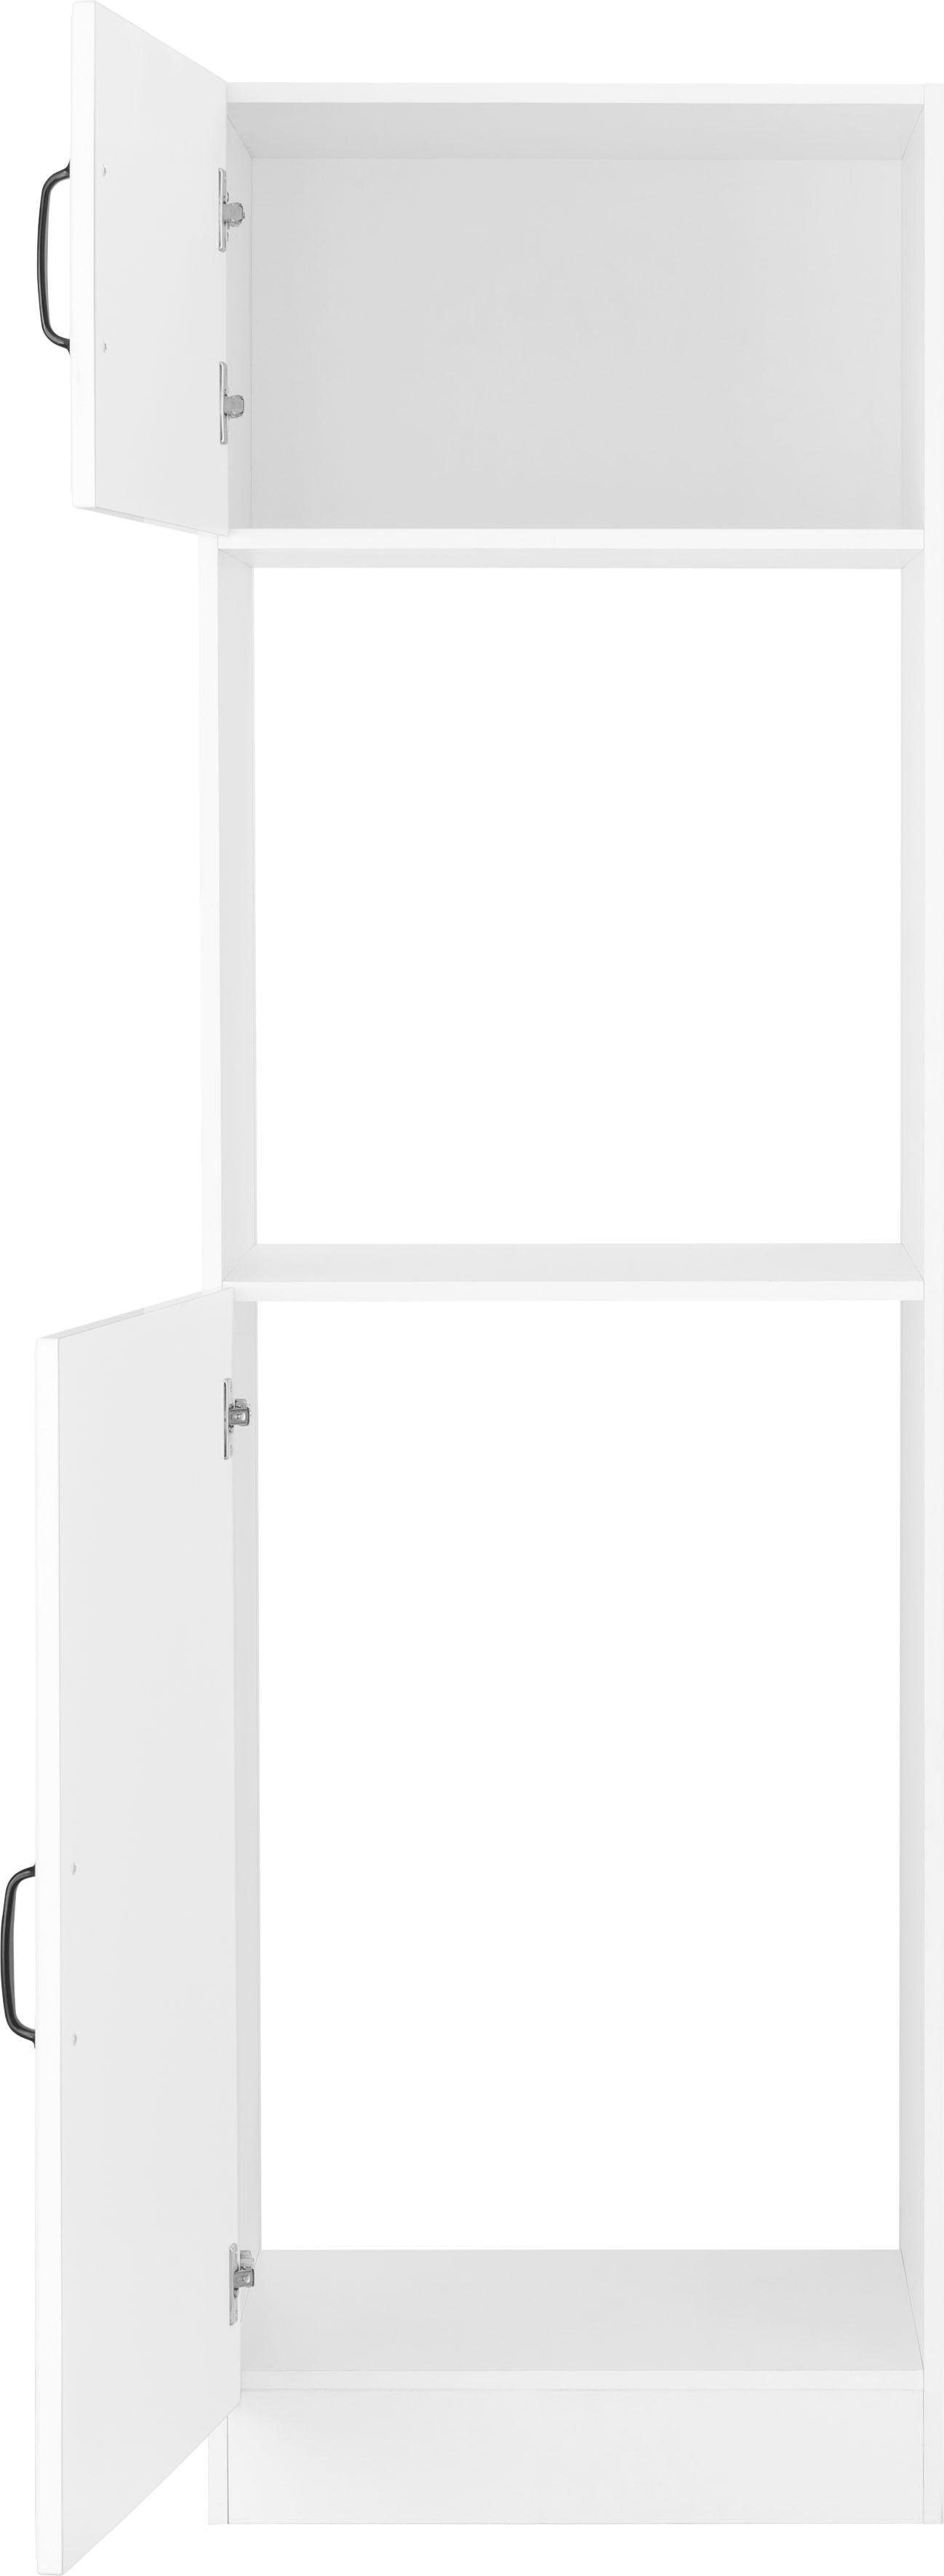 Backofen/Kühlumbauschrank weiß/weiß Erla mit 60 weiß wiho cm breit Küchen Kassettenfront |